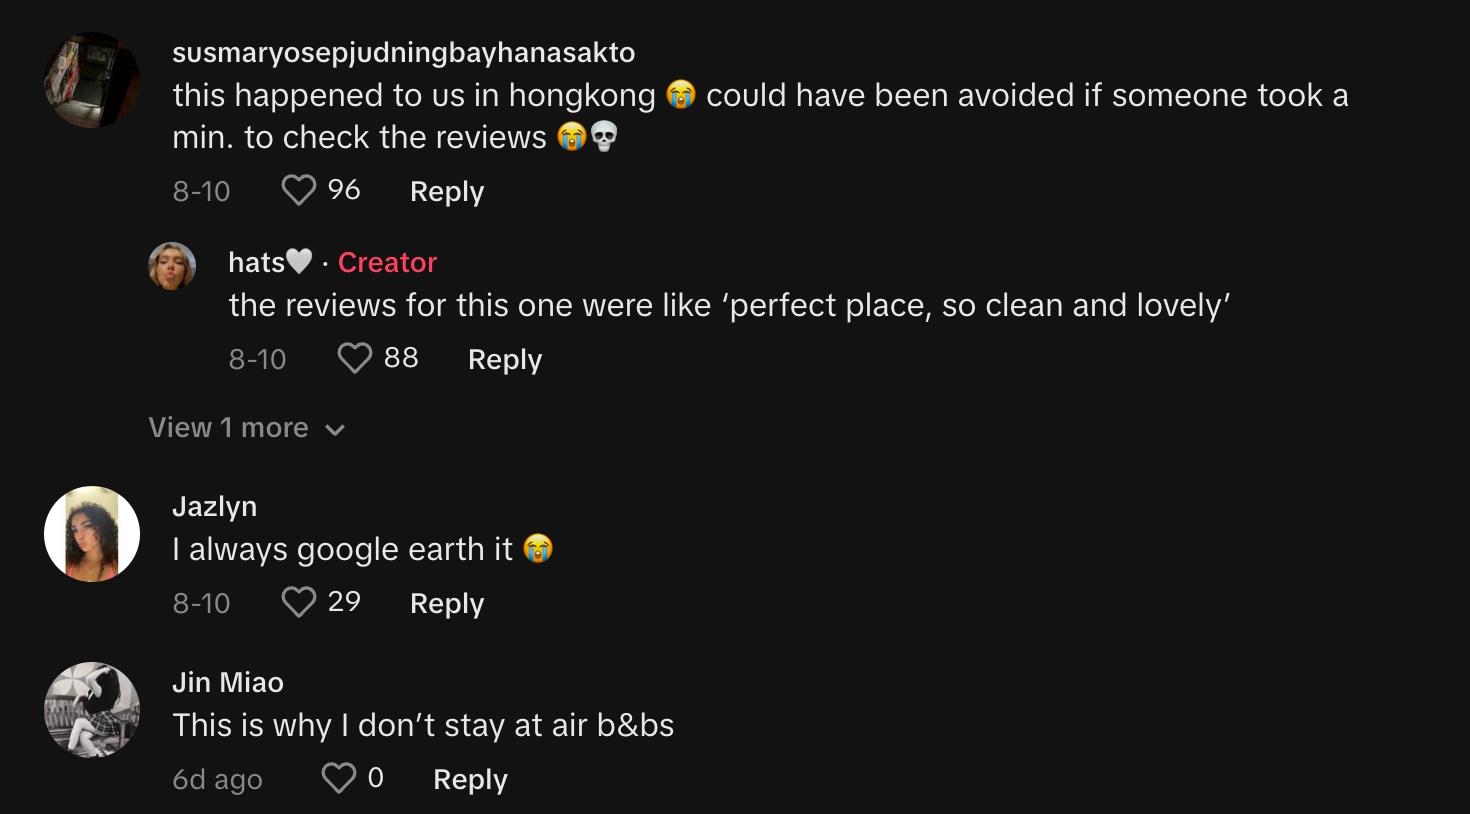 Les commentateurs partagent des expériences similaires avec Airbnbs